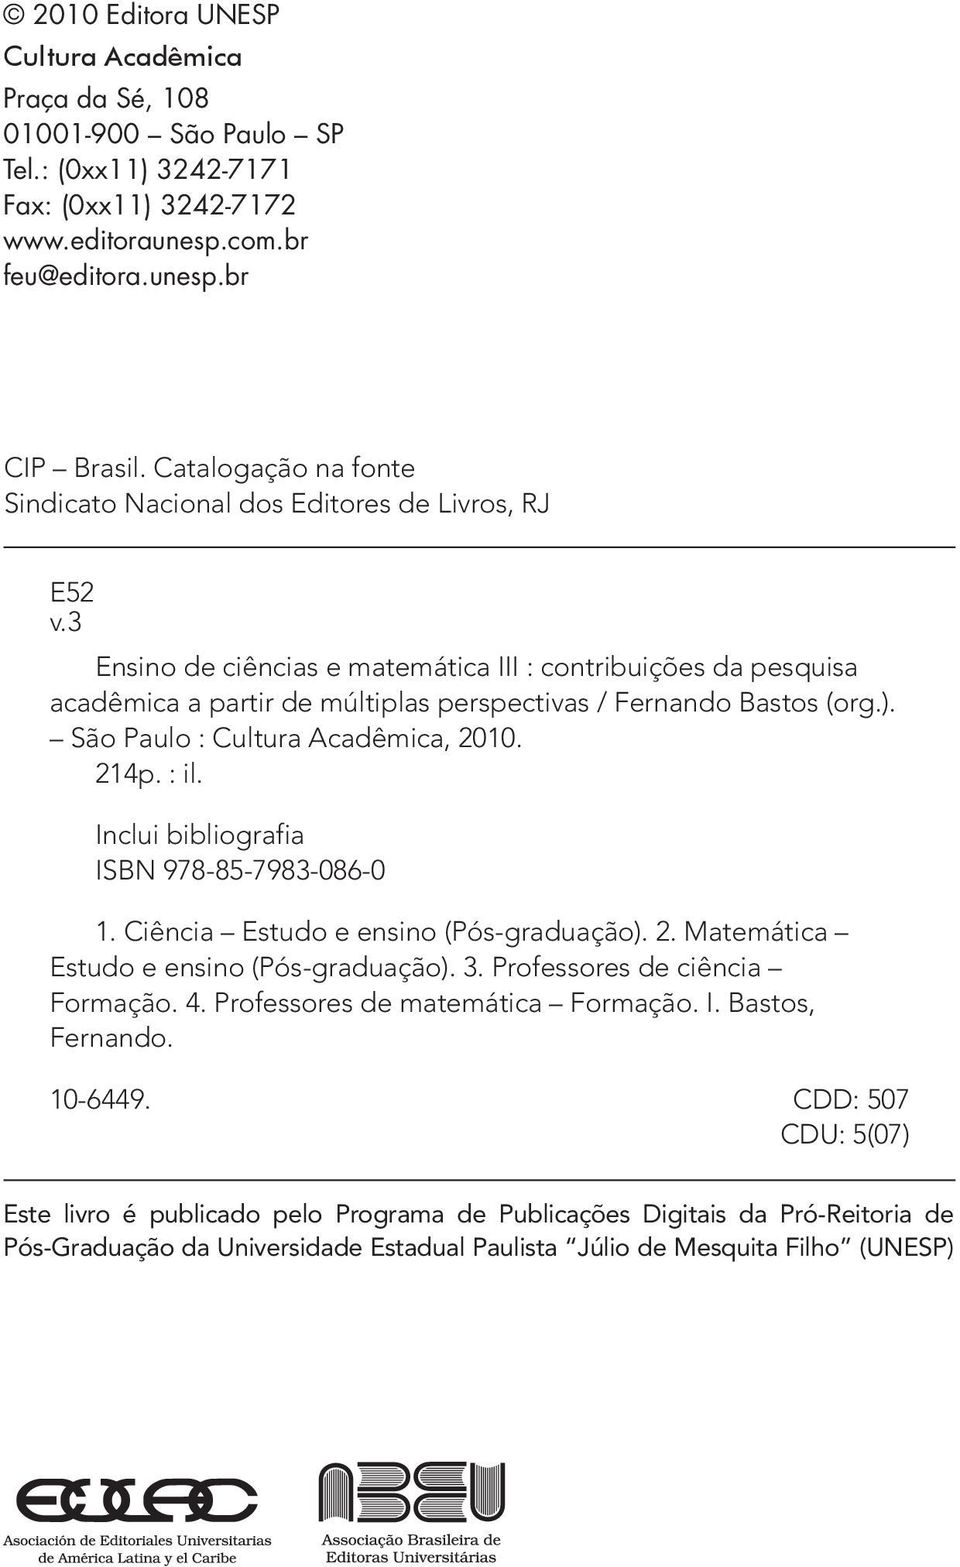 3 Ensino de ciências e matemática III : contribuições da pesquisa acadêmica a partir de múltiplas perspectivas / Fernando Bastos (org.). São Paulo : Cultura Acadêmica, 2010. 214p. : il.